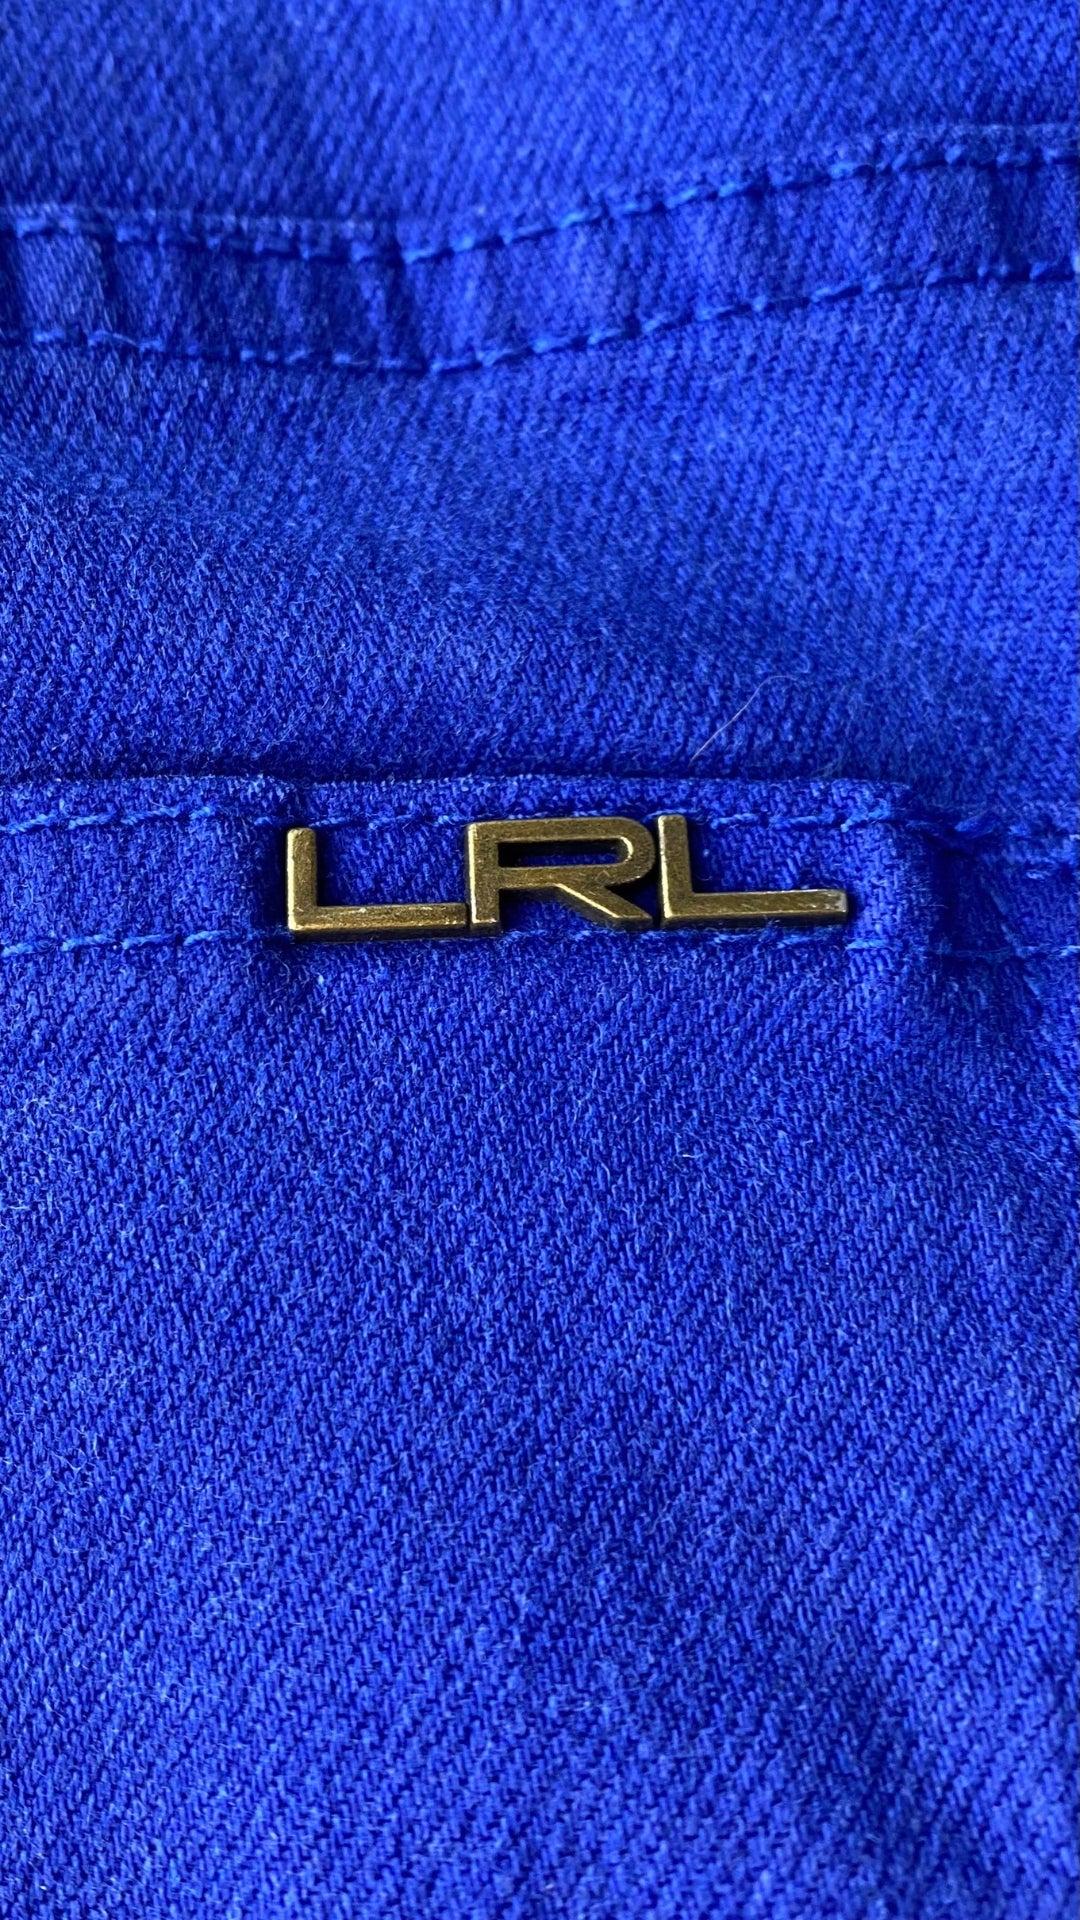 Pantalon en denim bleu royal Lauren Ralph Lauren, taille 14. Vue de la poche arrière.